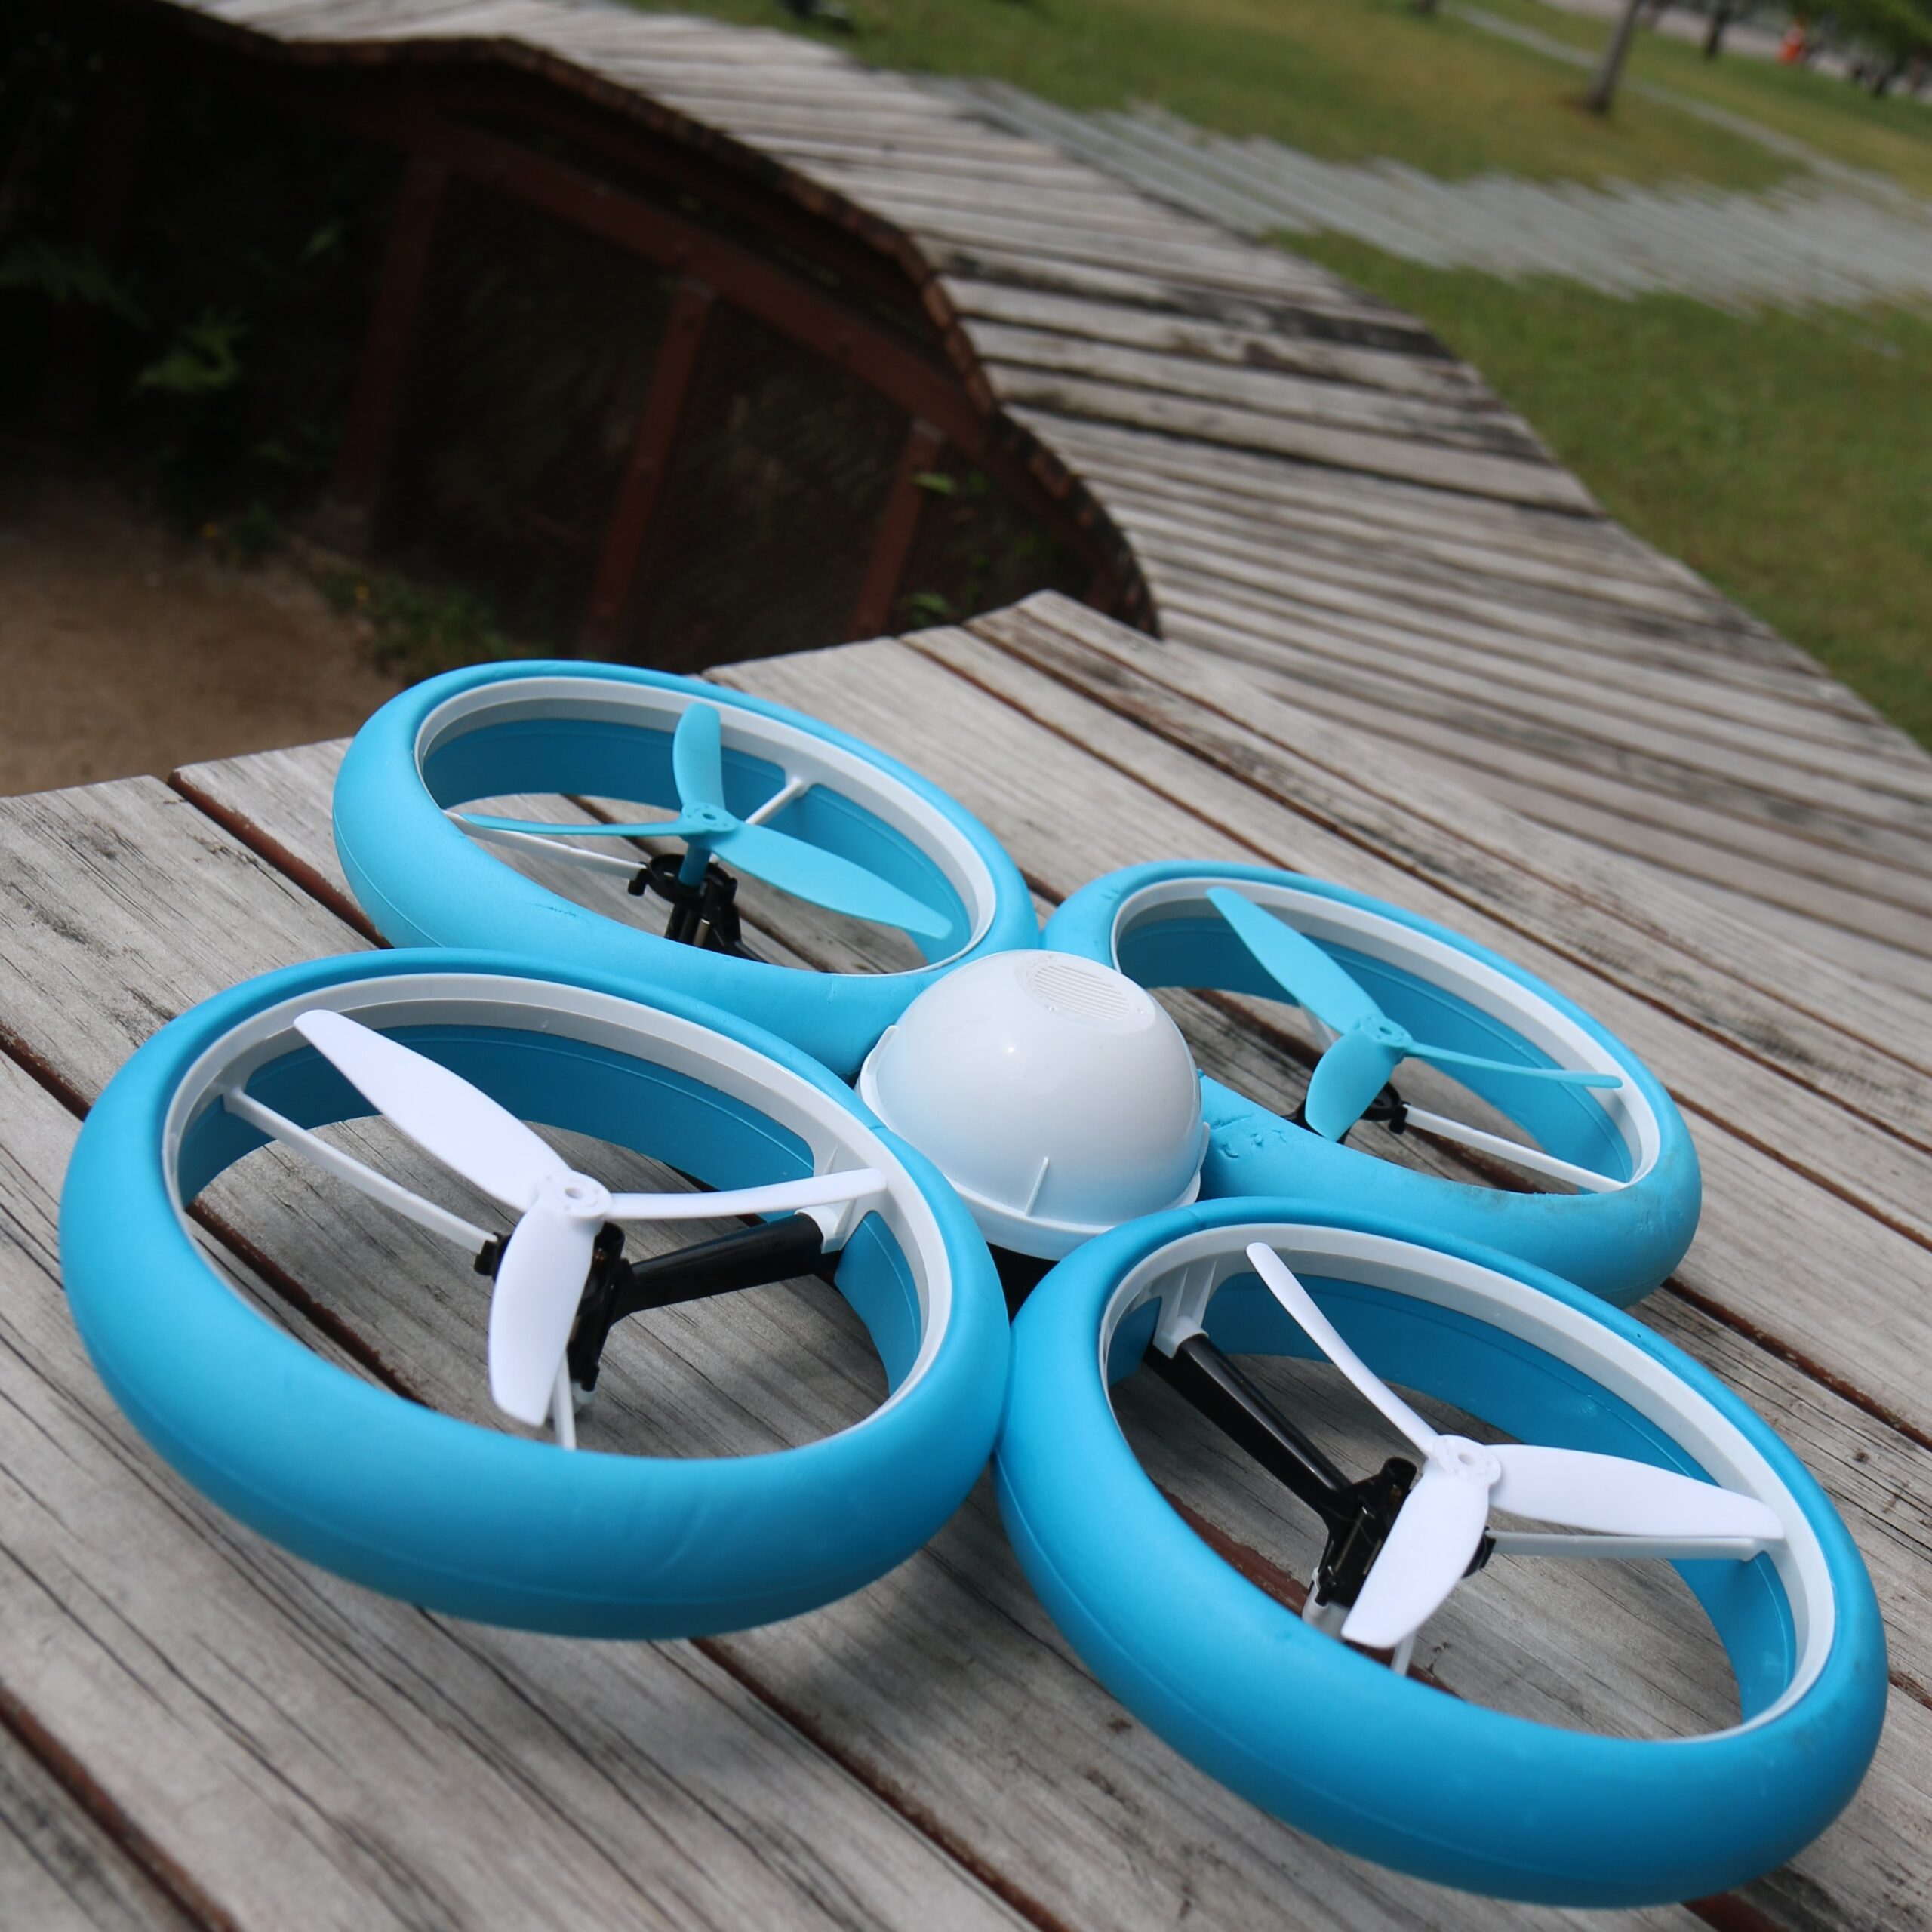 Batterie pour silverit bumper drone - Questions diverses - Forum Drones &  Voitures RC